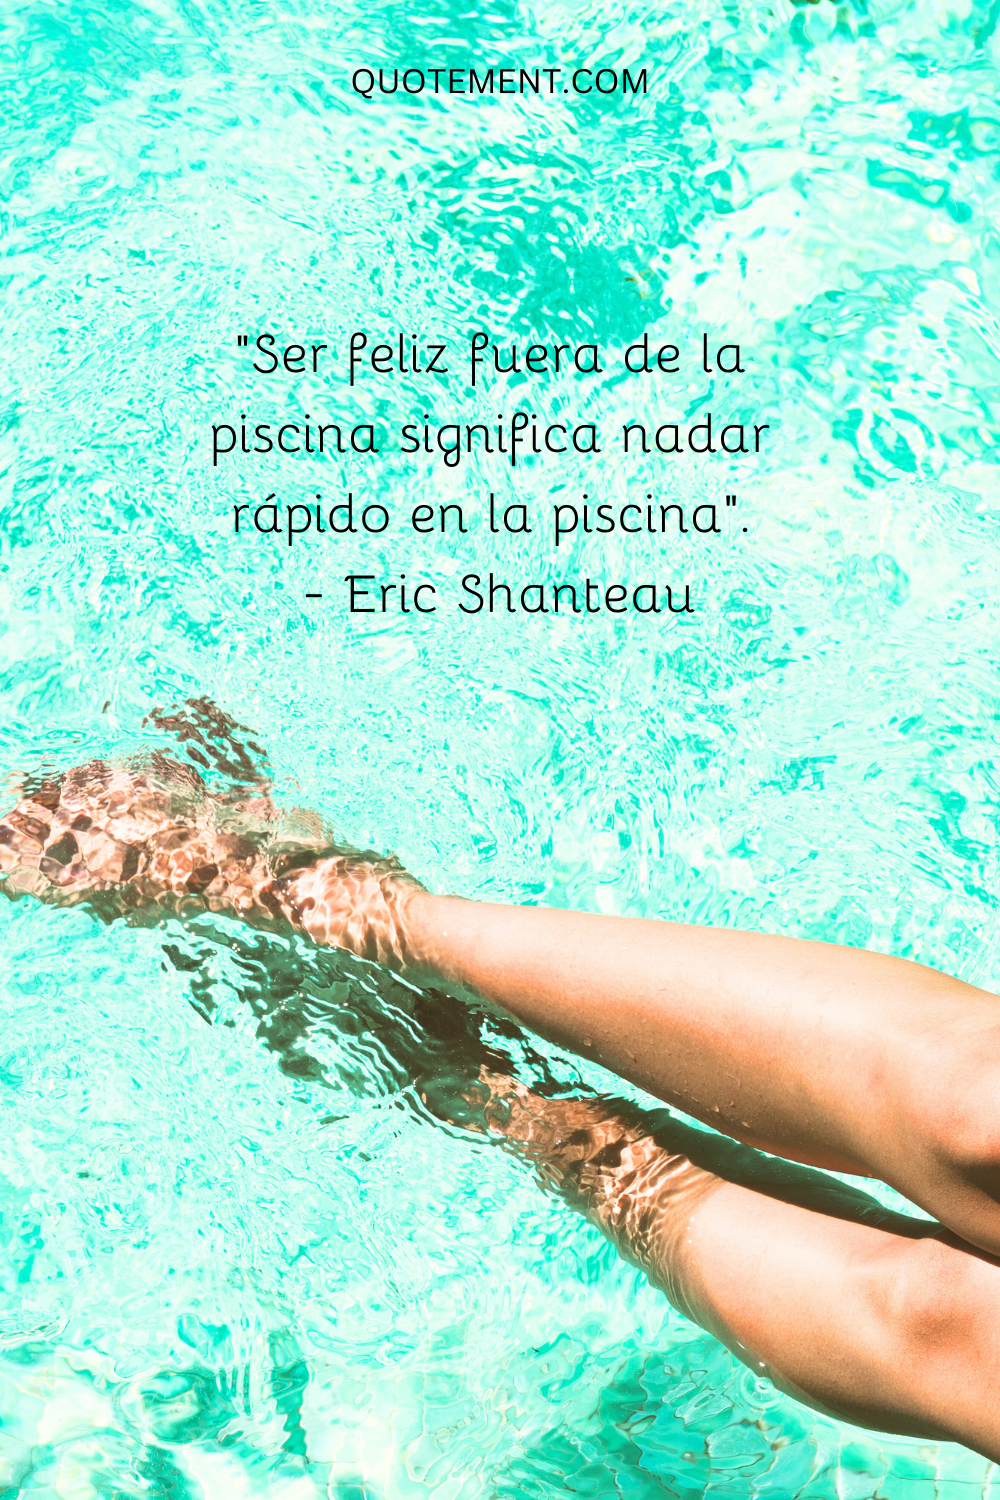 "Ser feliz fuera de la piscina significa nadar rápido en ella". - Eric Shanteau